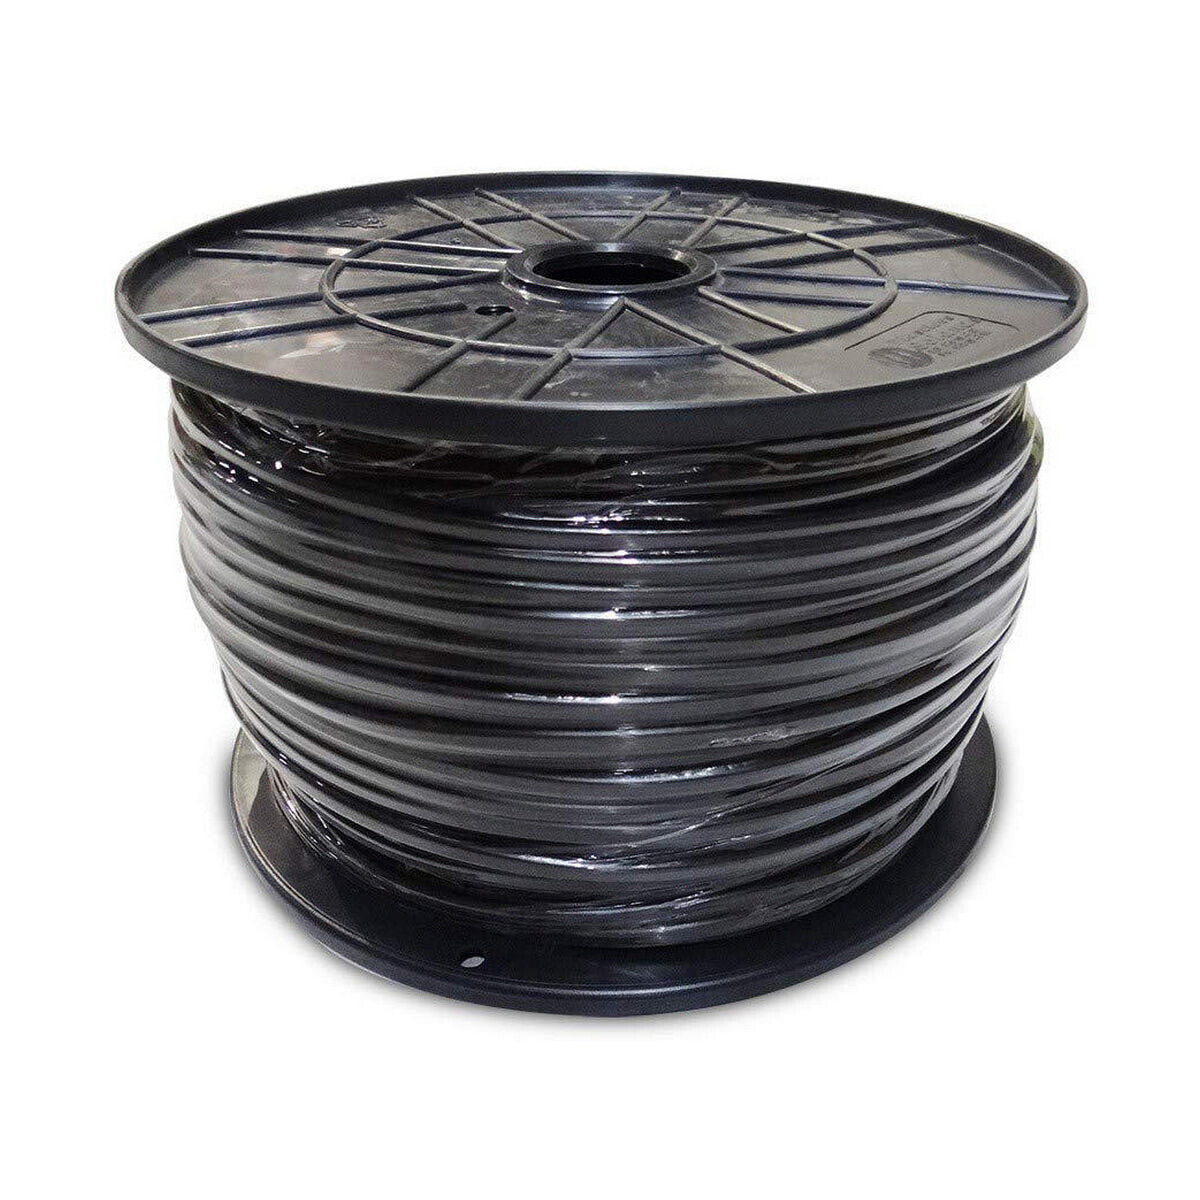 Cable Sediles 3 x 1,5 mm Black 200 m Ø 400 x 200 mm